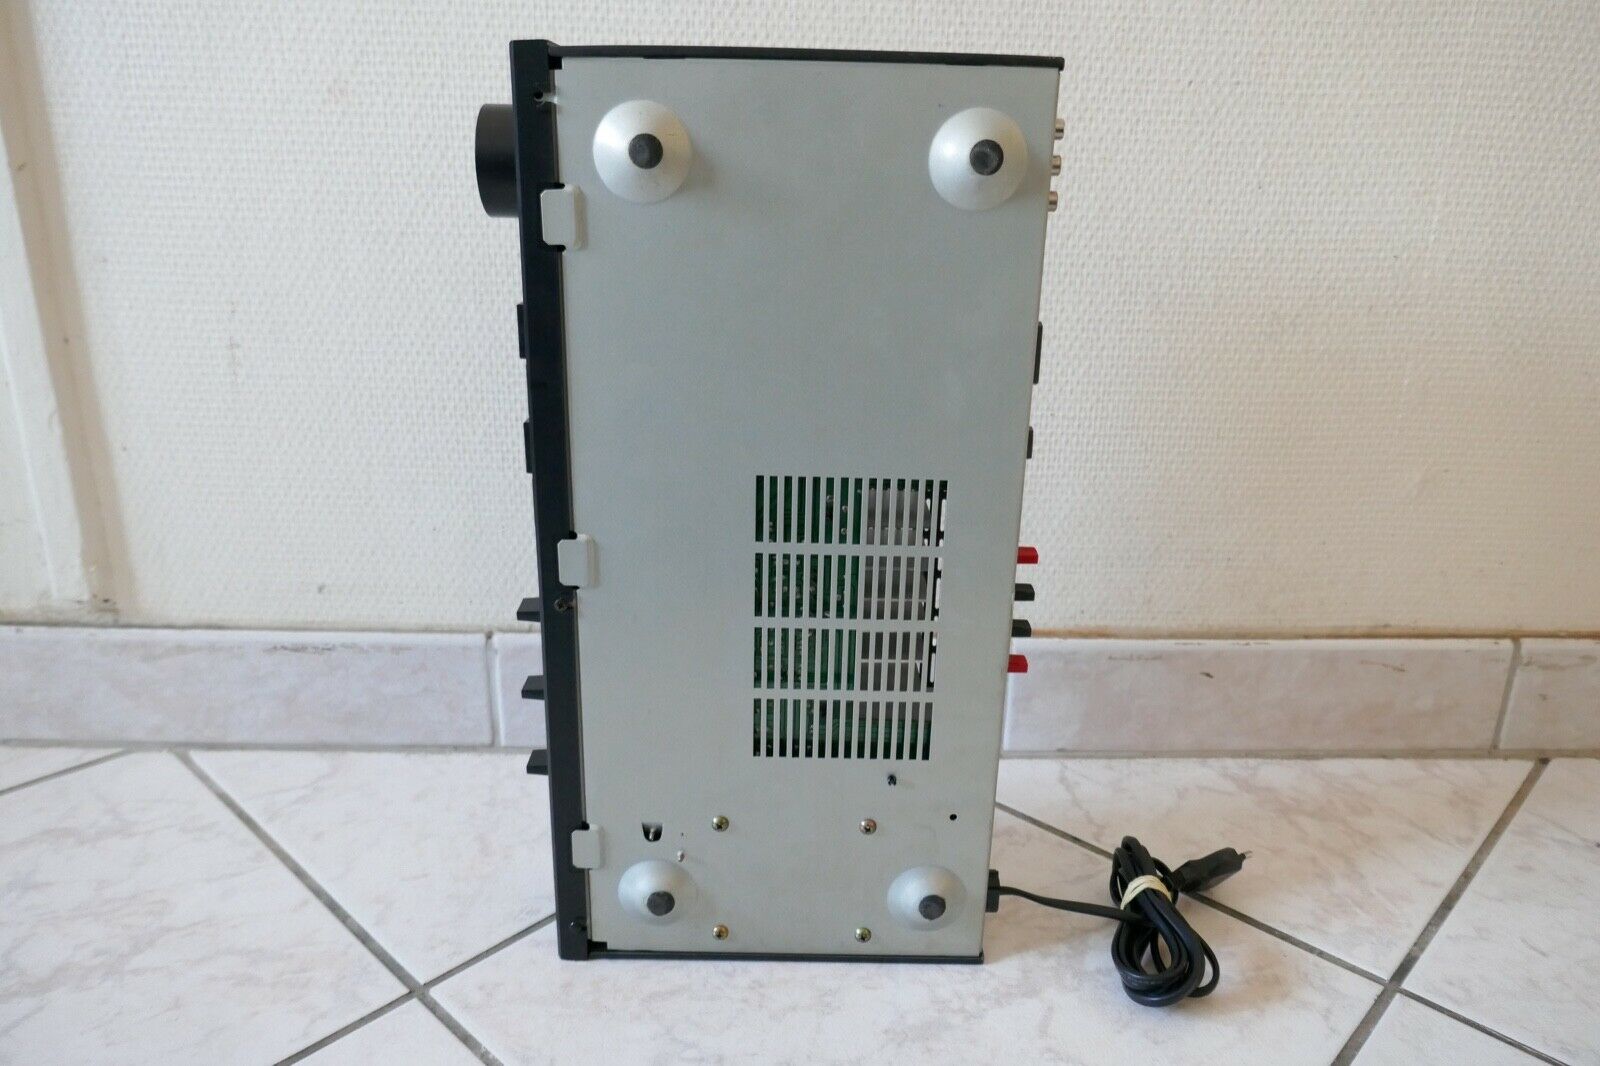 amplificateur amplifier toshiba SB-M12 vintage occasion